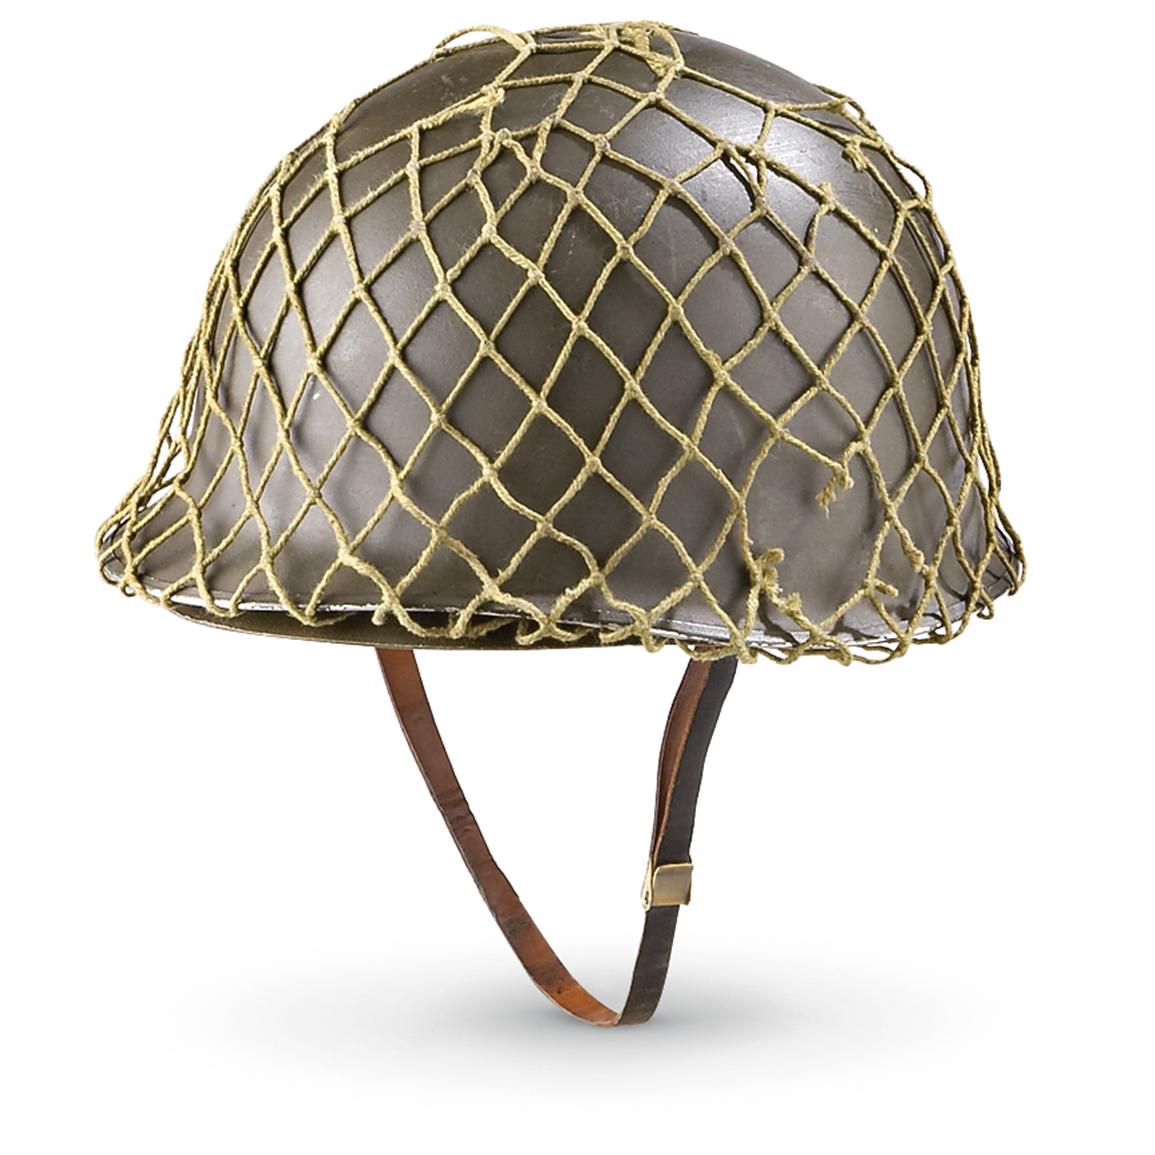 Used Austrian Military Helmet, Olive Drab - 182496, Helmets